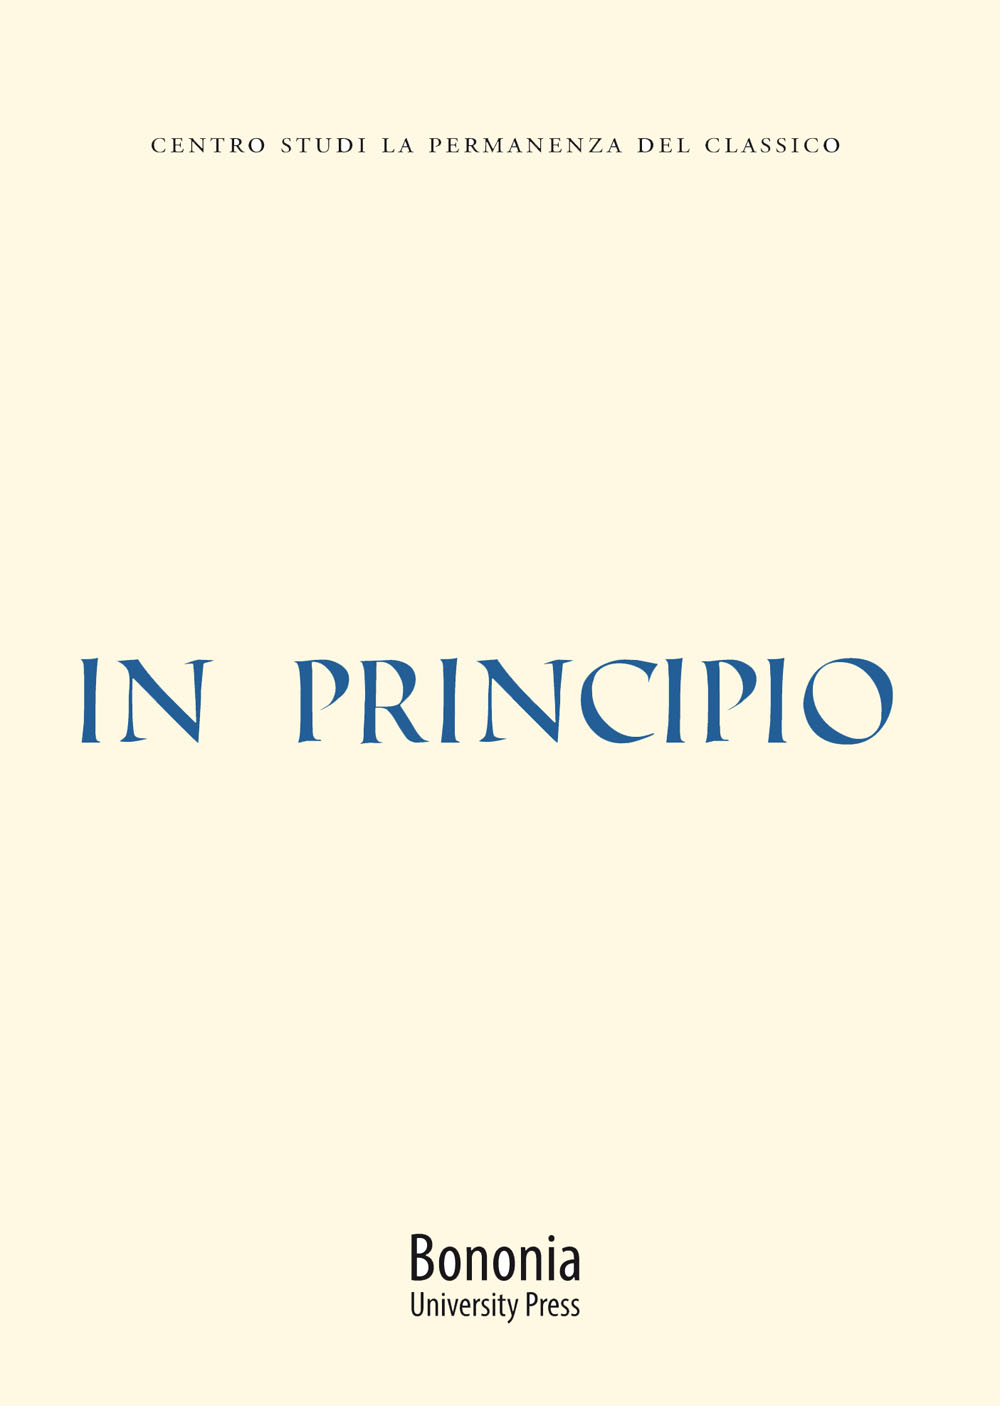 In principio - Bologna University Press